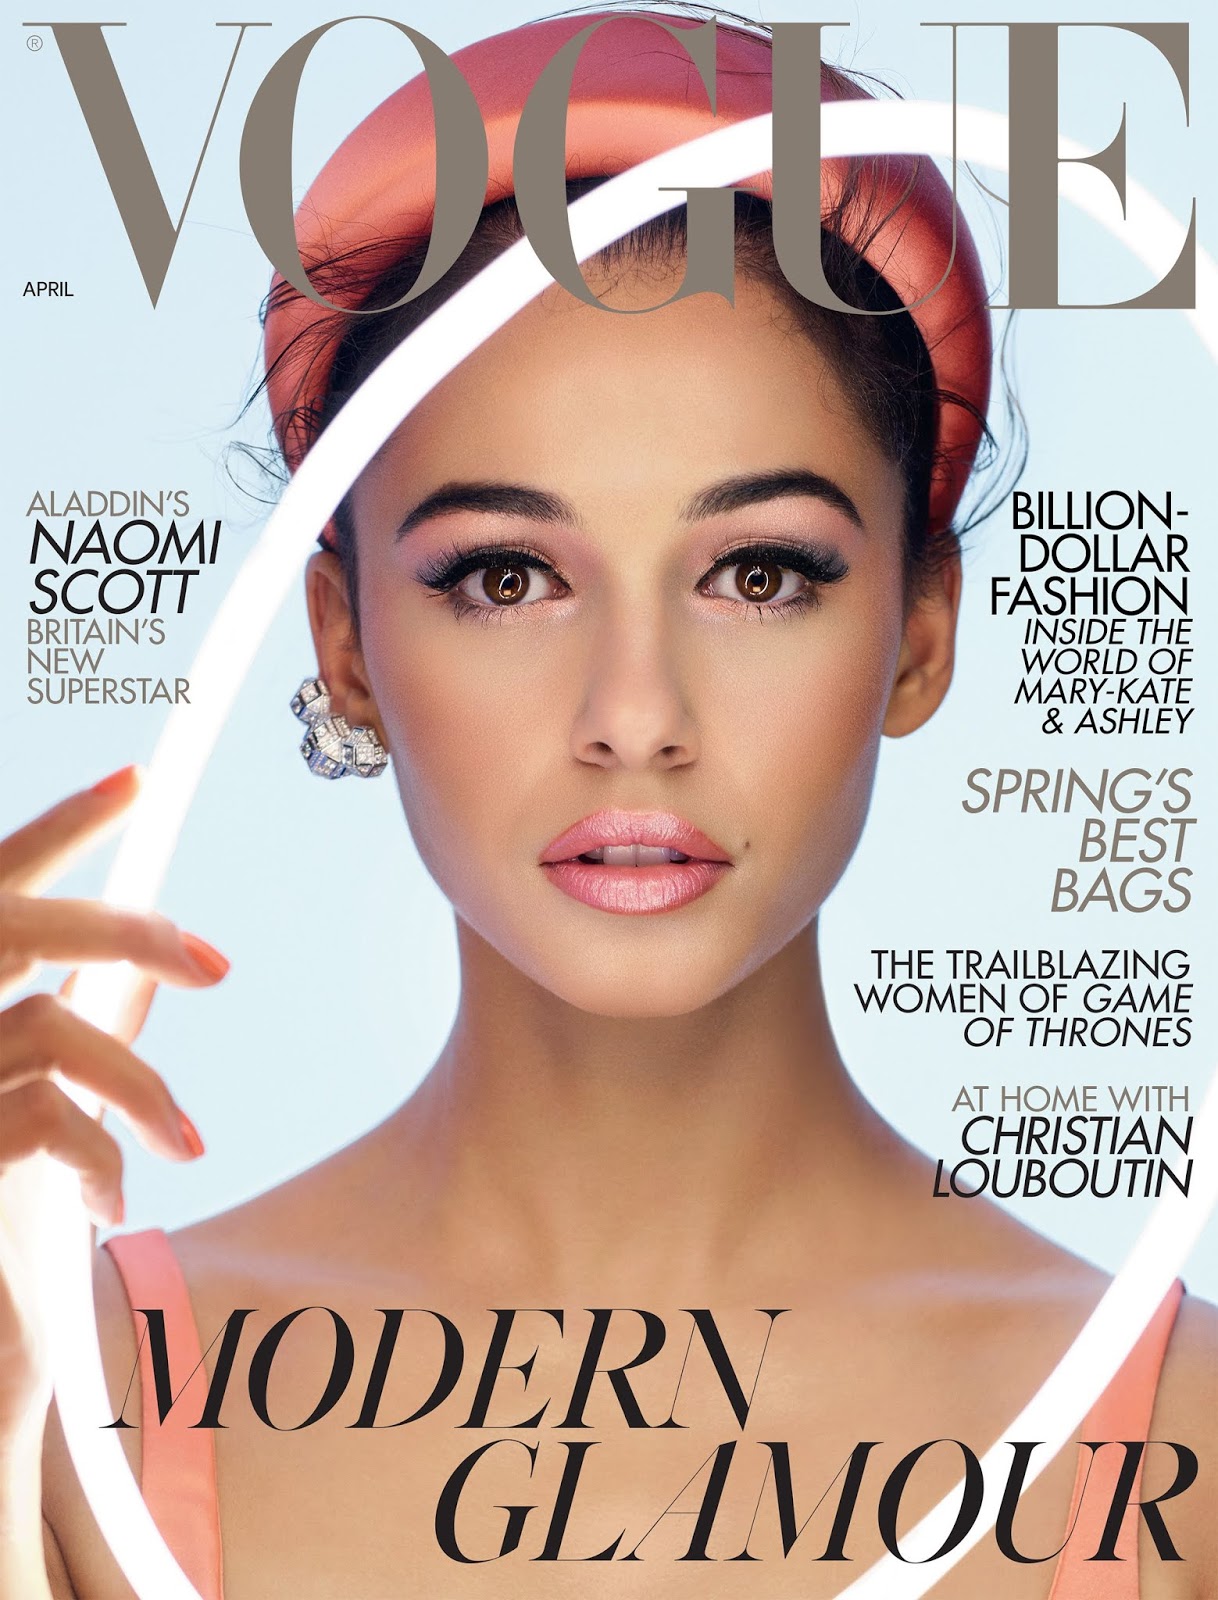 Naomi-Scott-Nick-Knight-Vogue-UK-April-2019 (2).jpg